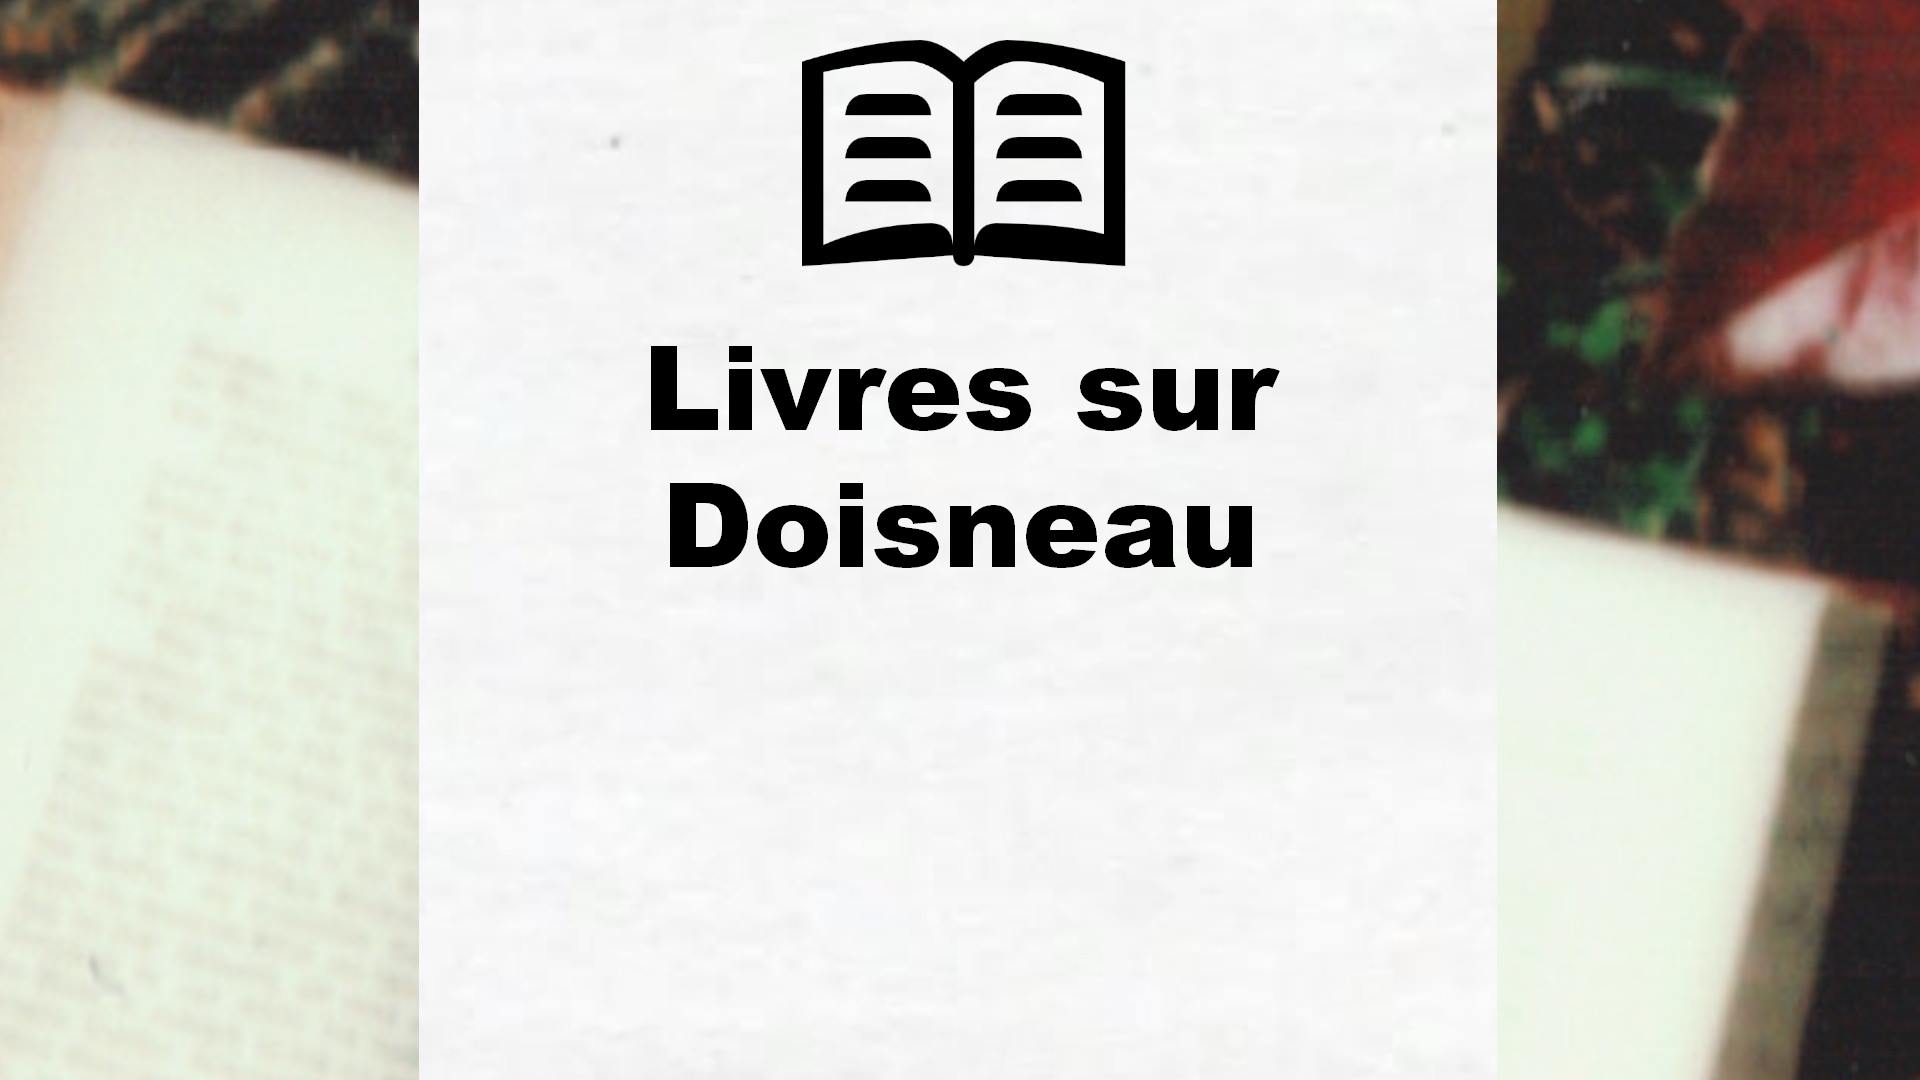 Livres sur Doisneau